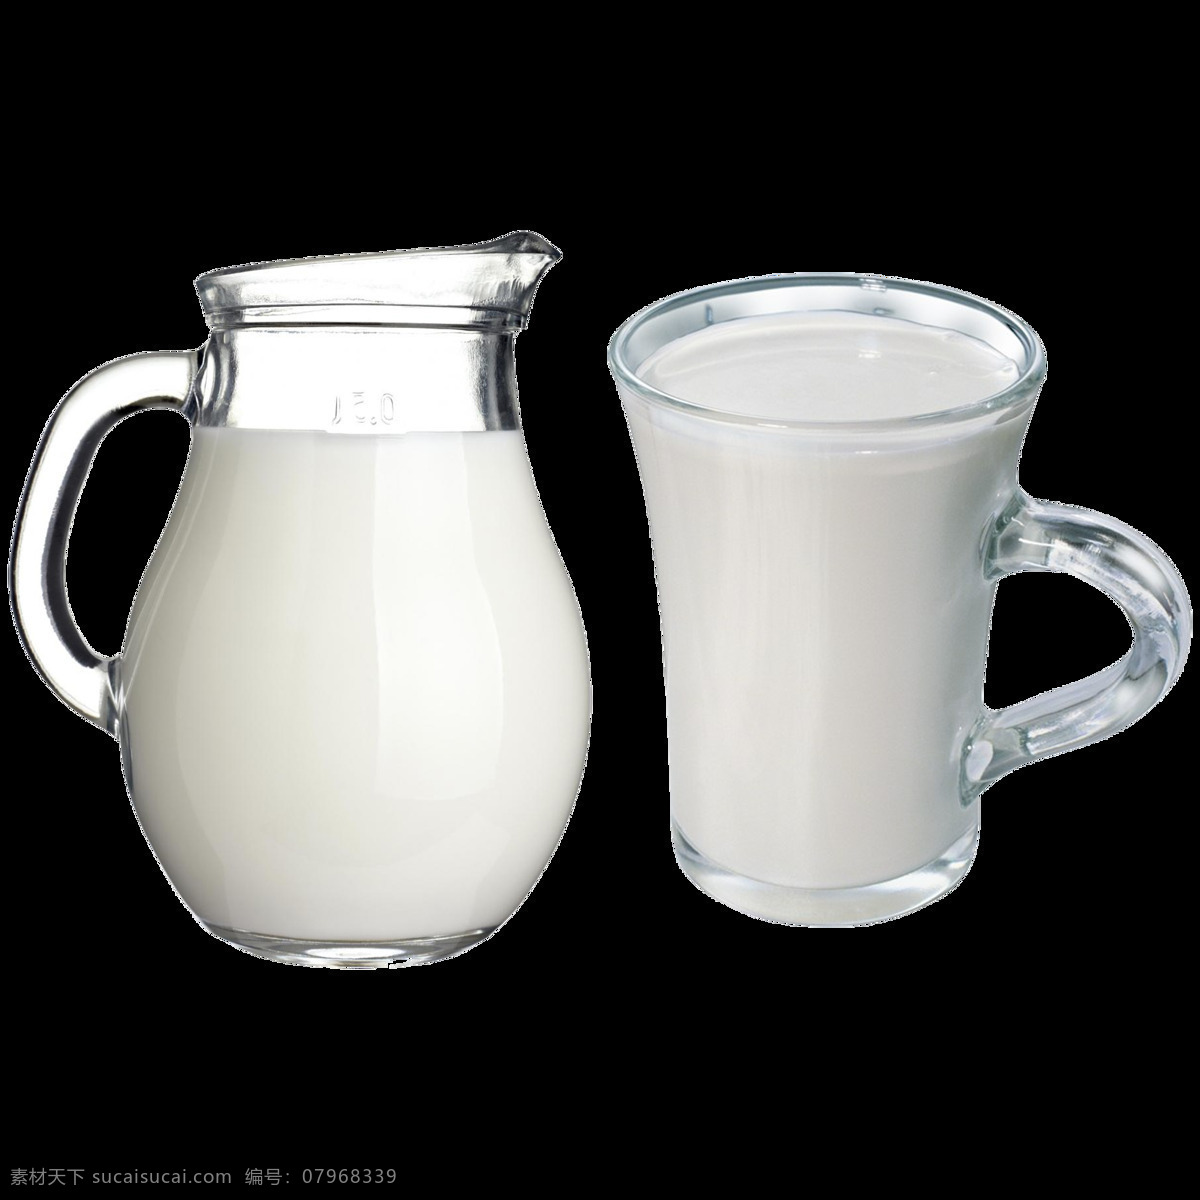 美味 牛奶 免 抠 透明 图 层 牛奶飞溅 一杯牛奶 盒装牛奶 一瓶牛奶 牛奶喷溅素材 牛奶矢量图 鲜牛奶 牛奶卡通图片 热牛奶 原味牛奶 发酵酸奶 瓶装牛奶 牛奶图片